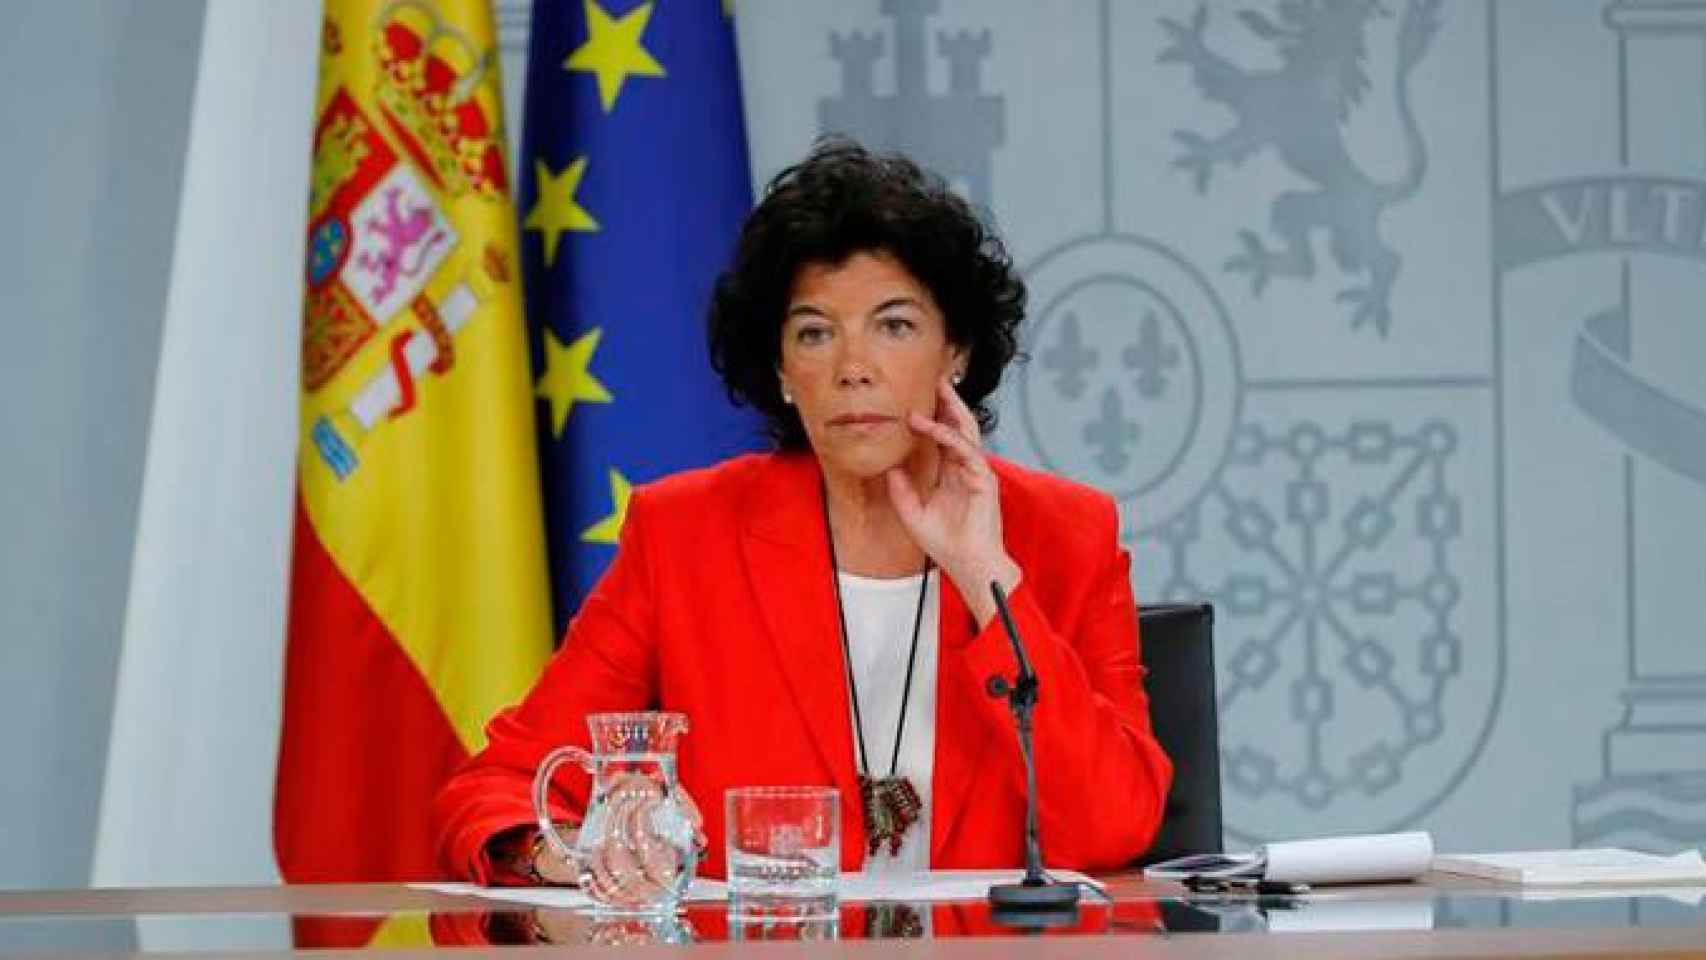 La portavoz del Gobierno, Isabel Celaá, responde a la conferencia de Quim Torra desde La Moncloa / EFE